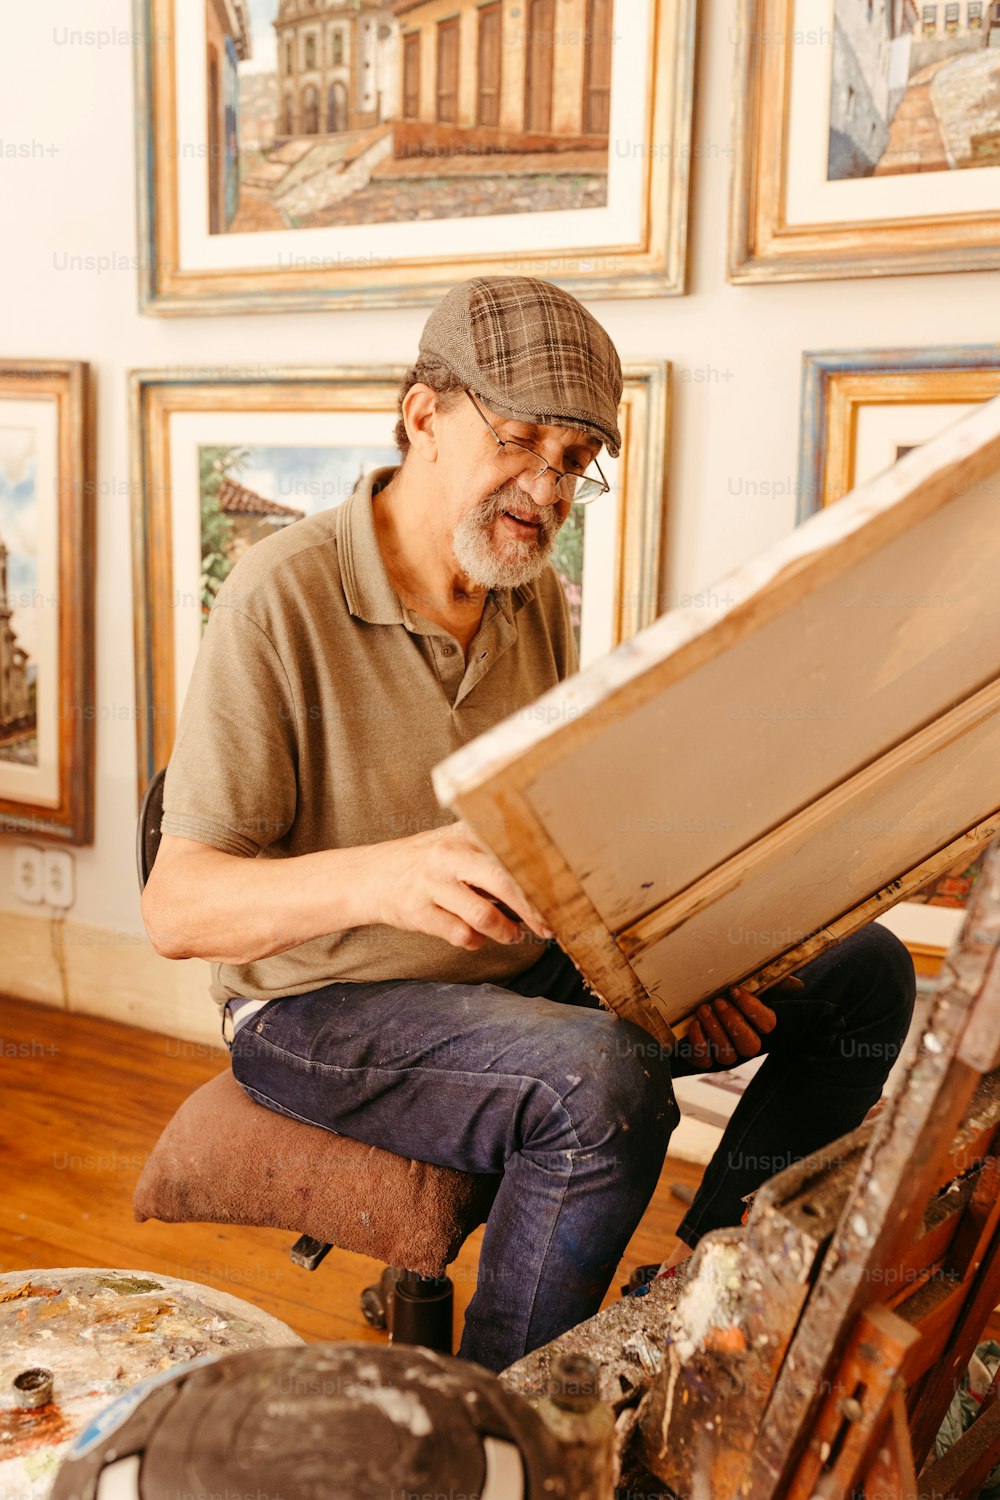 Un uomo seduto su uno sgabello che lavora su un'opera d'arte